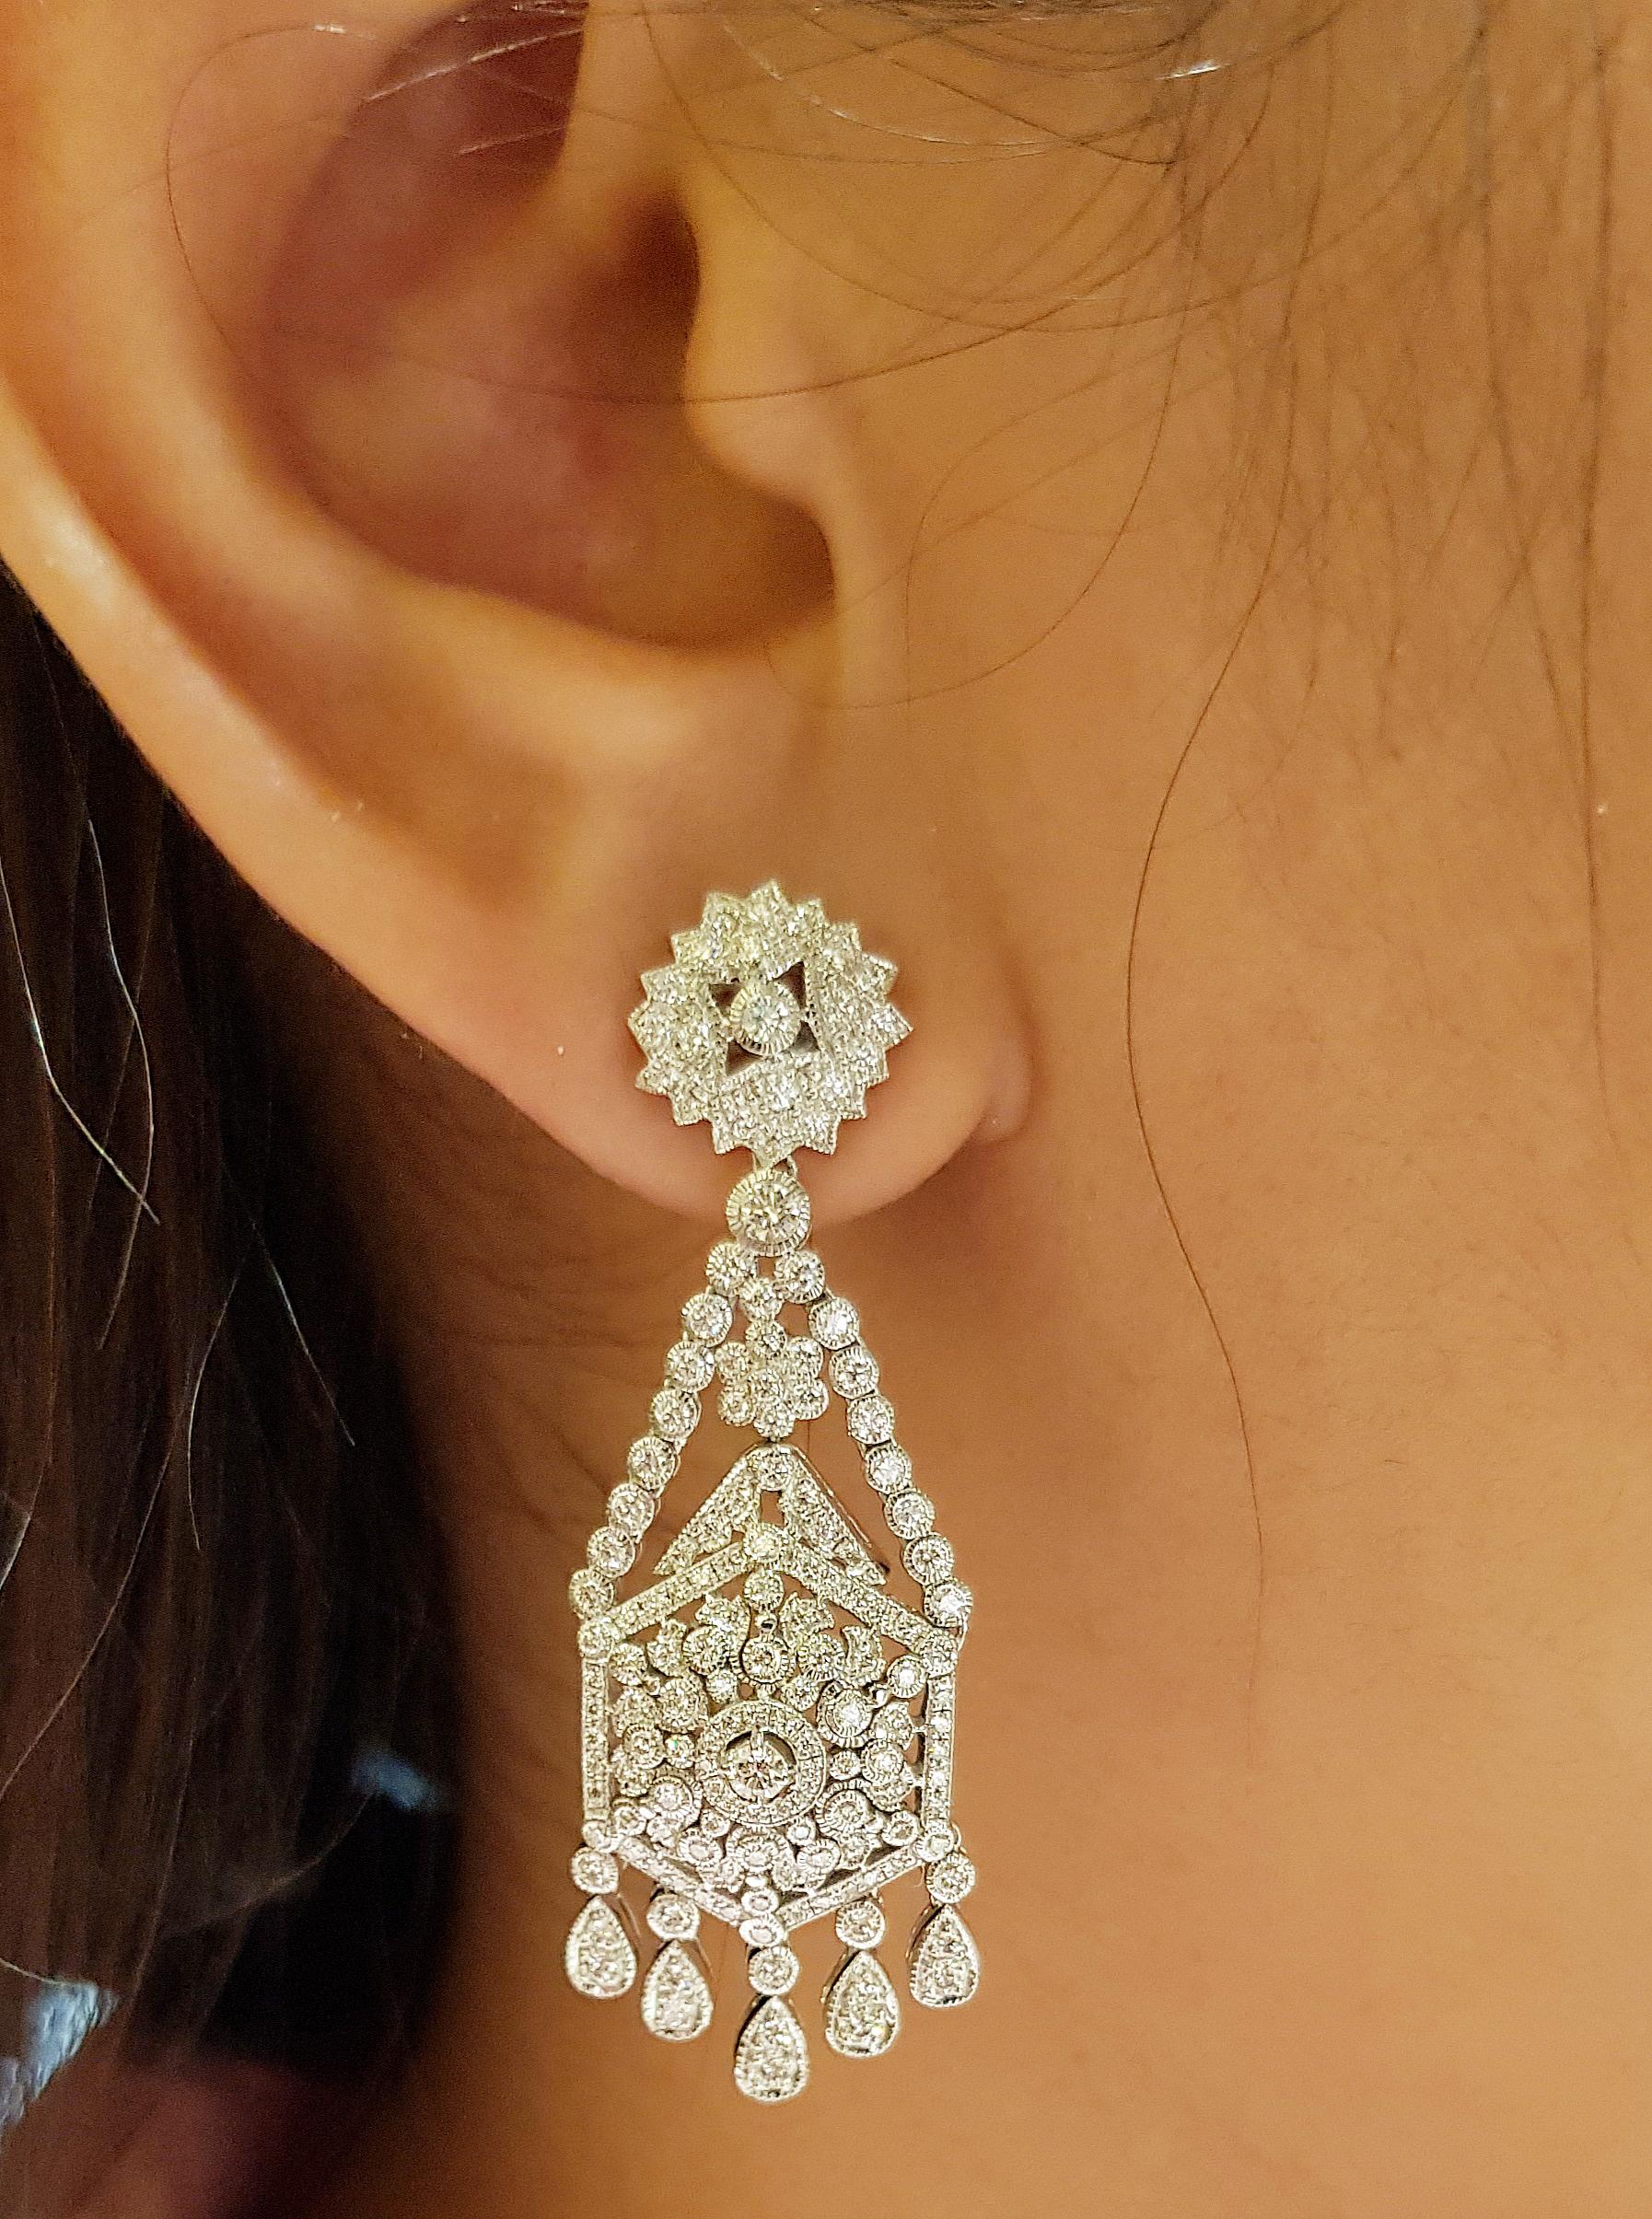 Boucles d'oreilles en diamant de 1,59 carats serties dans une monture en or blanc 18 carats

Largeur :  1.6 cm 
Longueur : 4,5 cm
Poids total : 14,16 grammes

